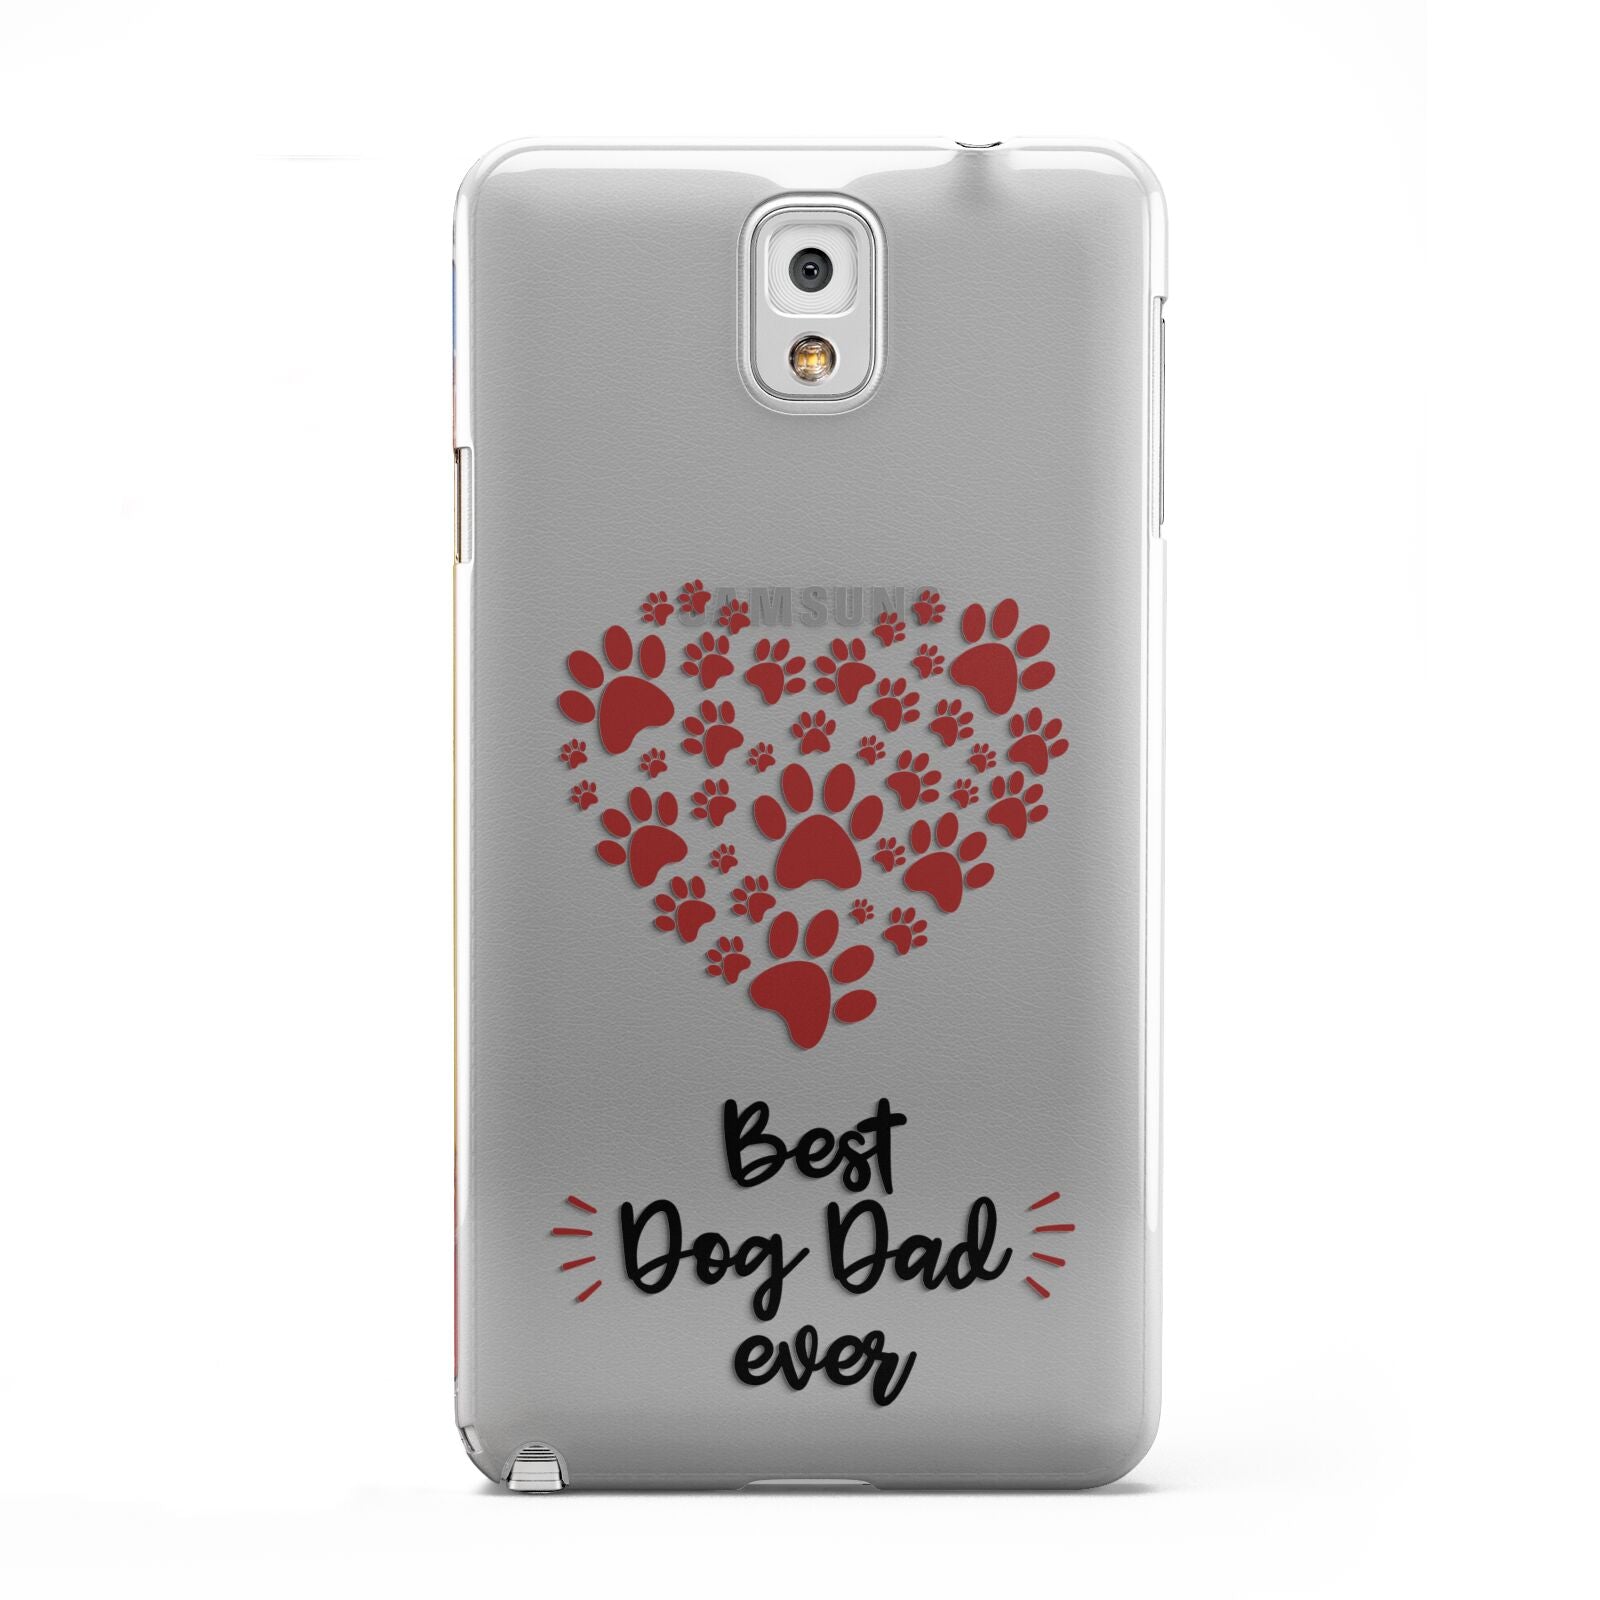 Best Dog Dad Paws Samsung Galaxy Note 3 Case